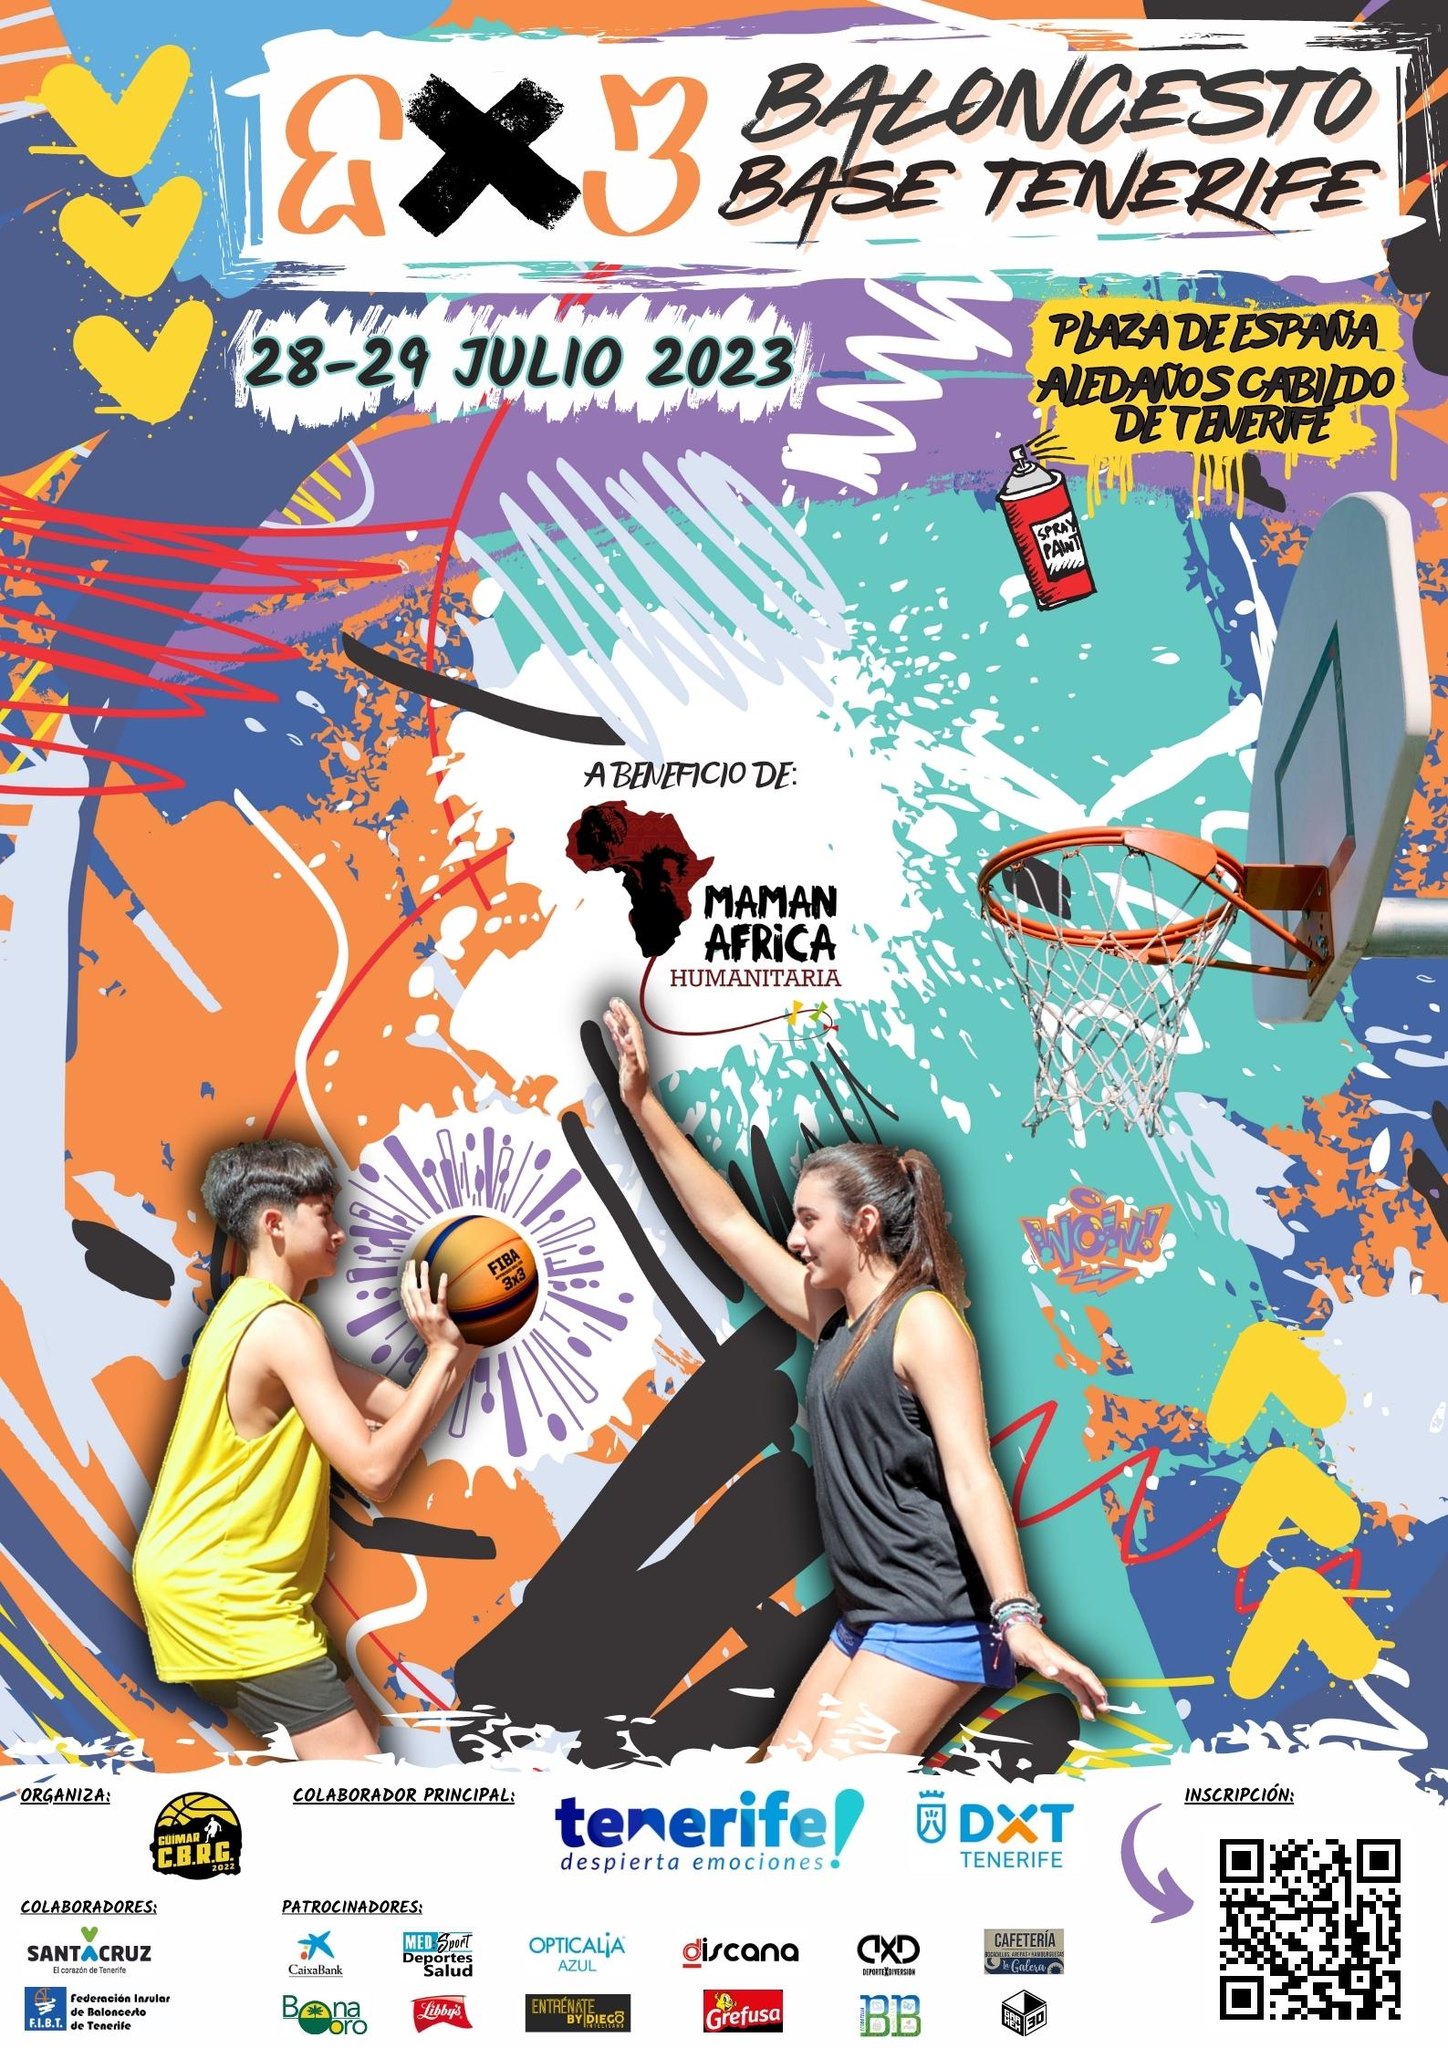 El 3x3 Baloncesto Base Tenerife 2023 También Para Cadetes Y Júniors Basketmanía 7061